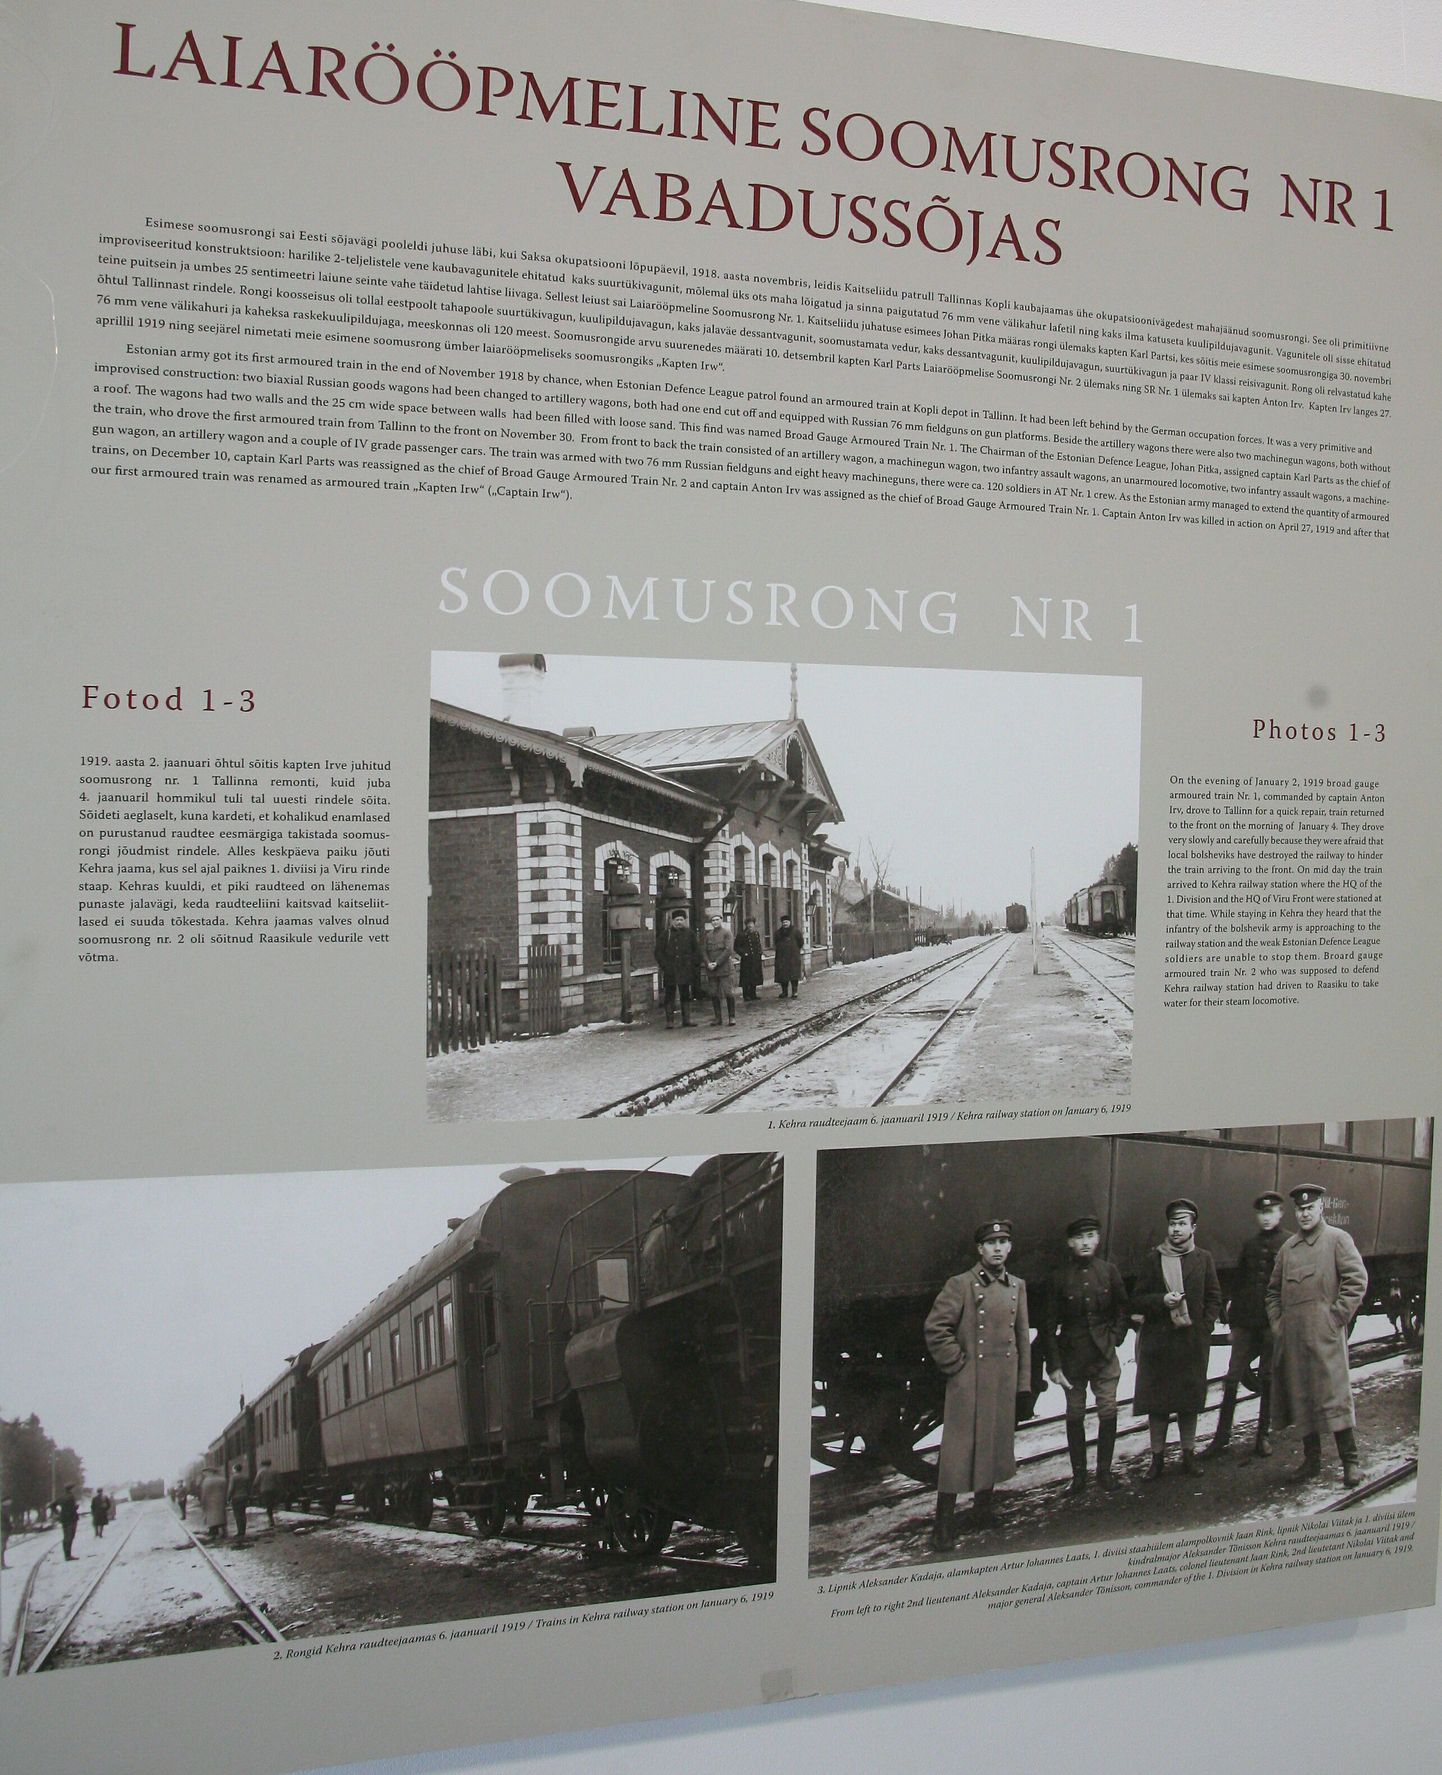 Pärnus Port Arturis avati näitus laiarööpmelise soomusrongi nr 1 tegevusest vabadussõjas.